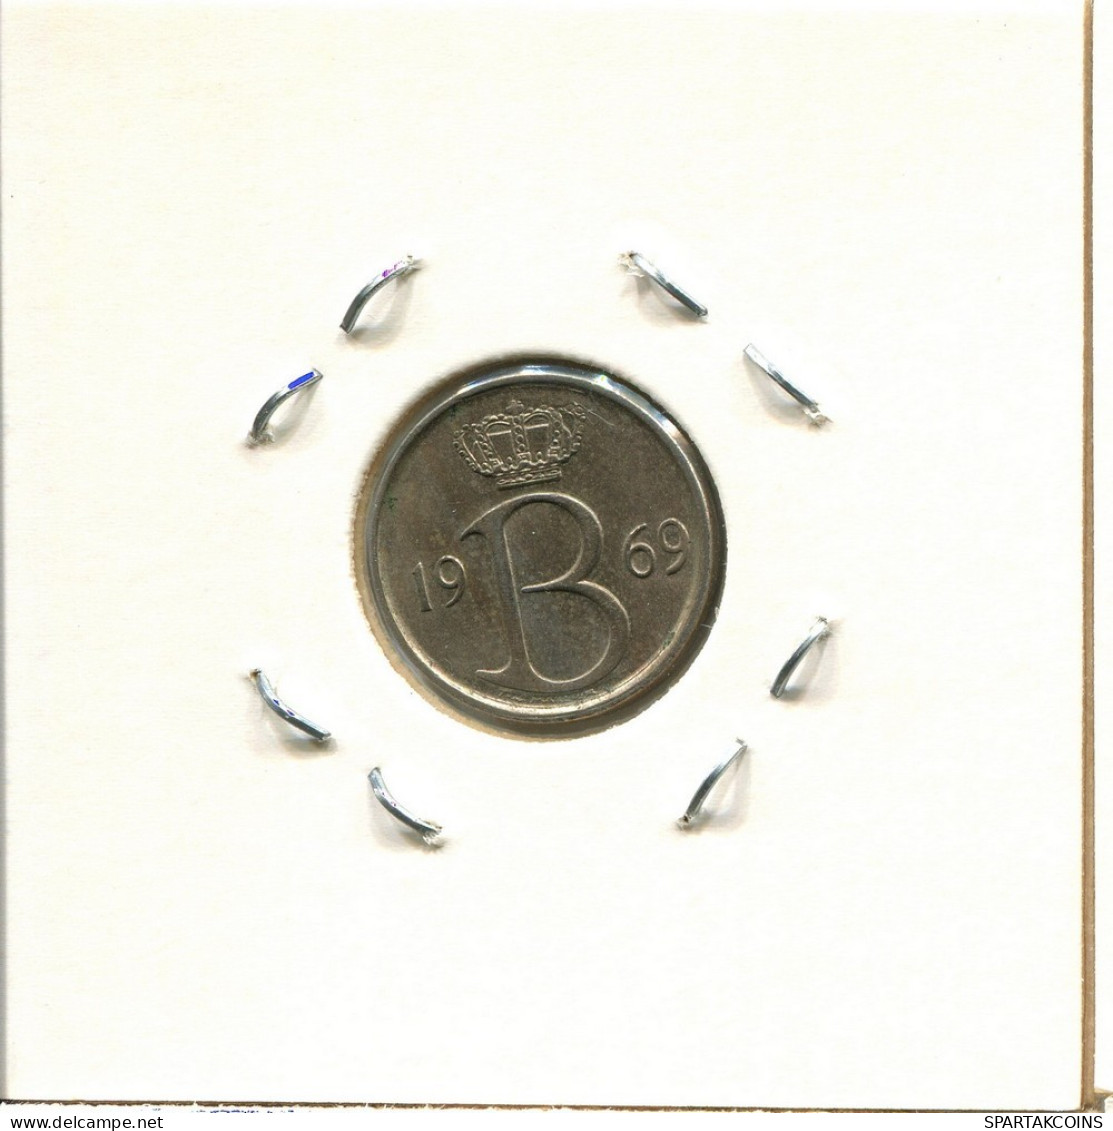 25 CENTIMES 1969 DUTCH Text BÉLGICA BELGIUM Moneda #BA331.E.A - 25 Cent